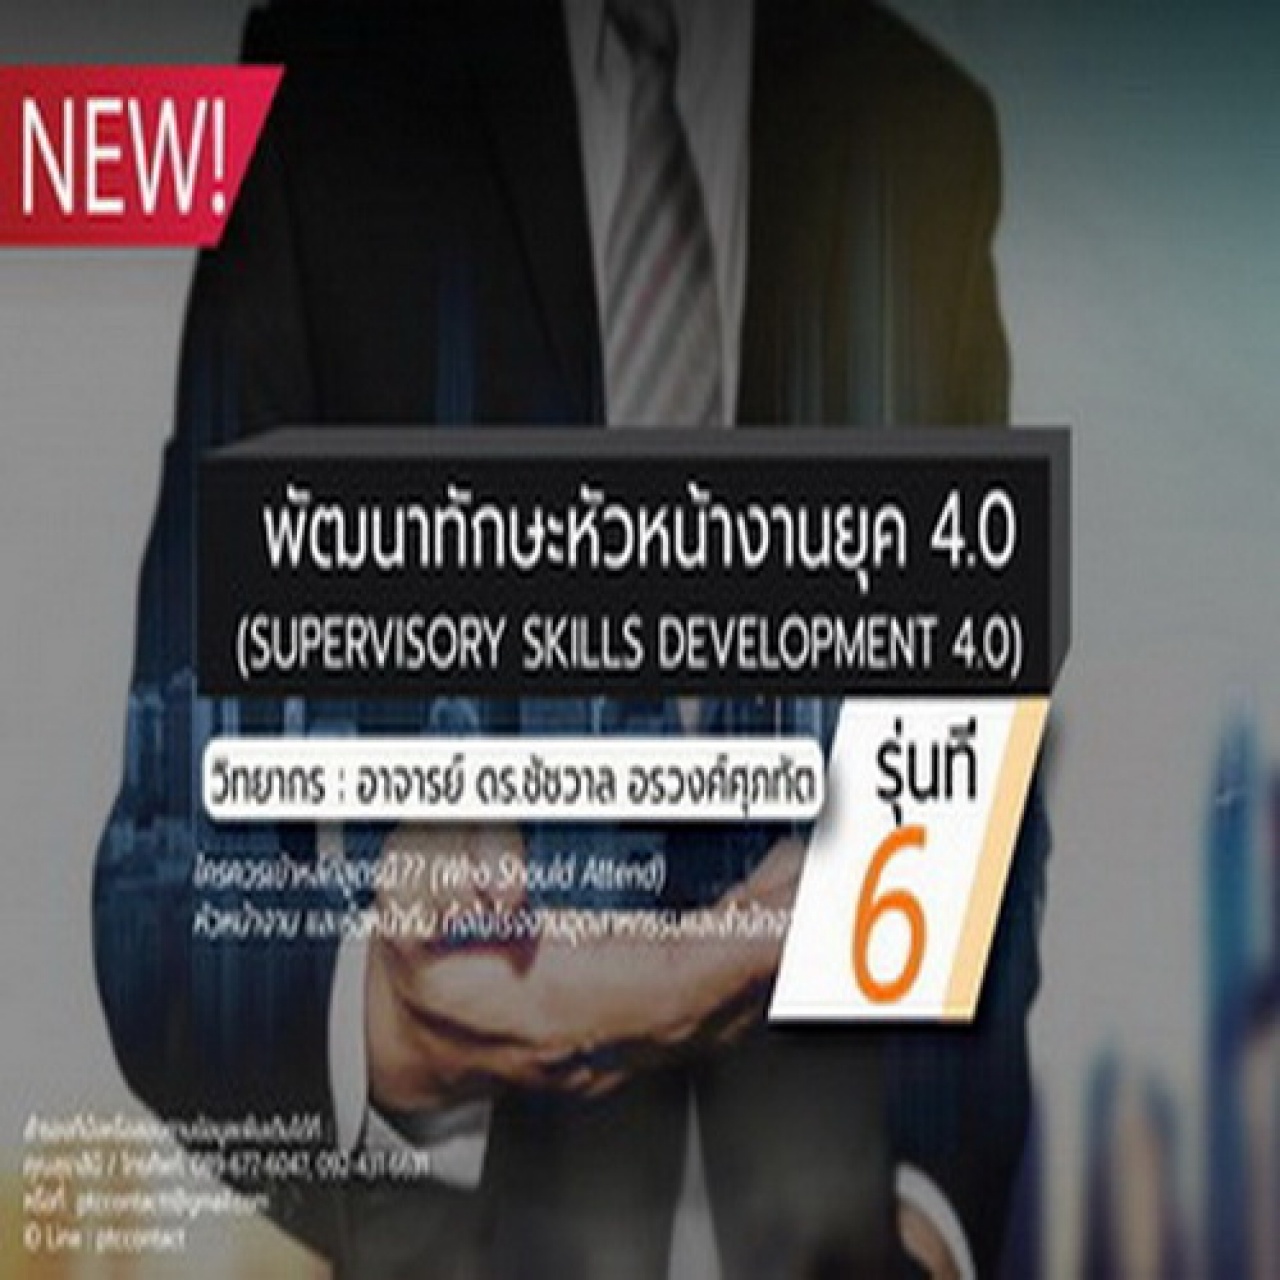 พัฒนาทักษะหัวหน้างานยุค 4.0  รุ่นที่ 6 (Supervisory Skills Development 4.0)